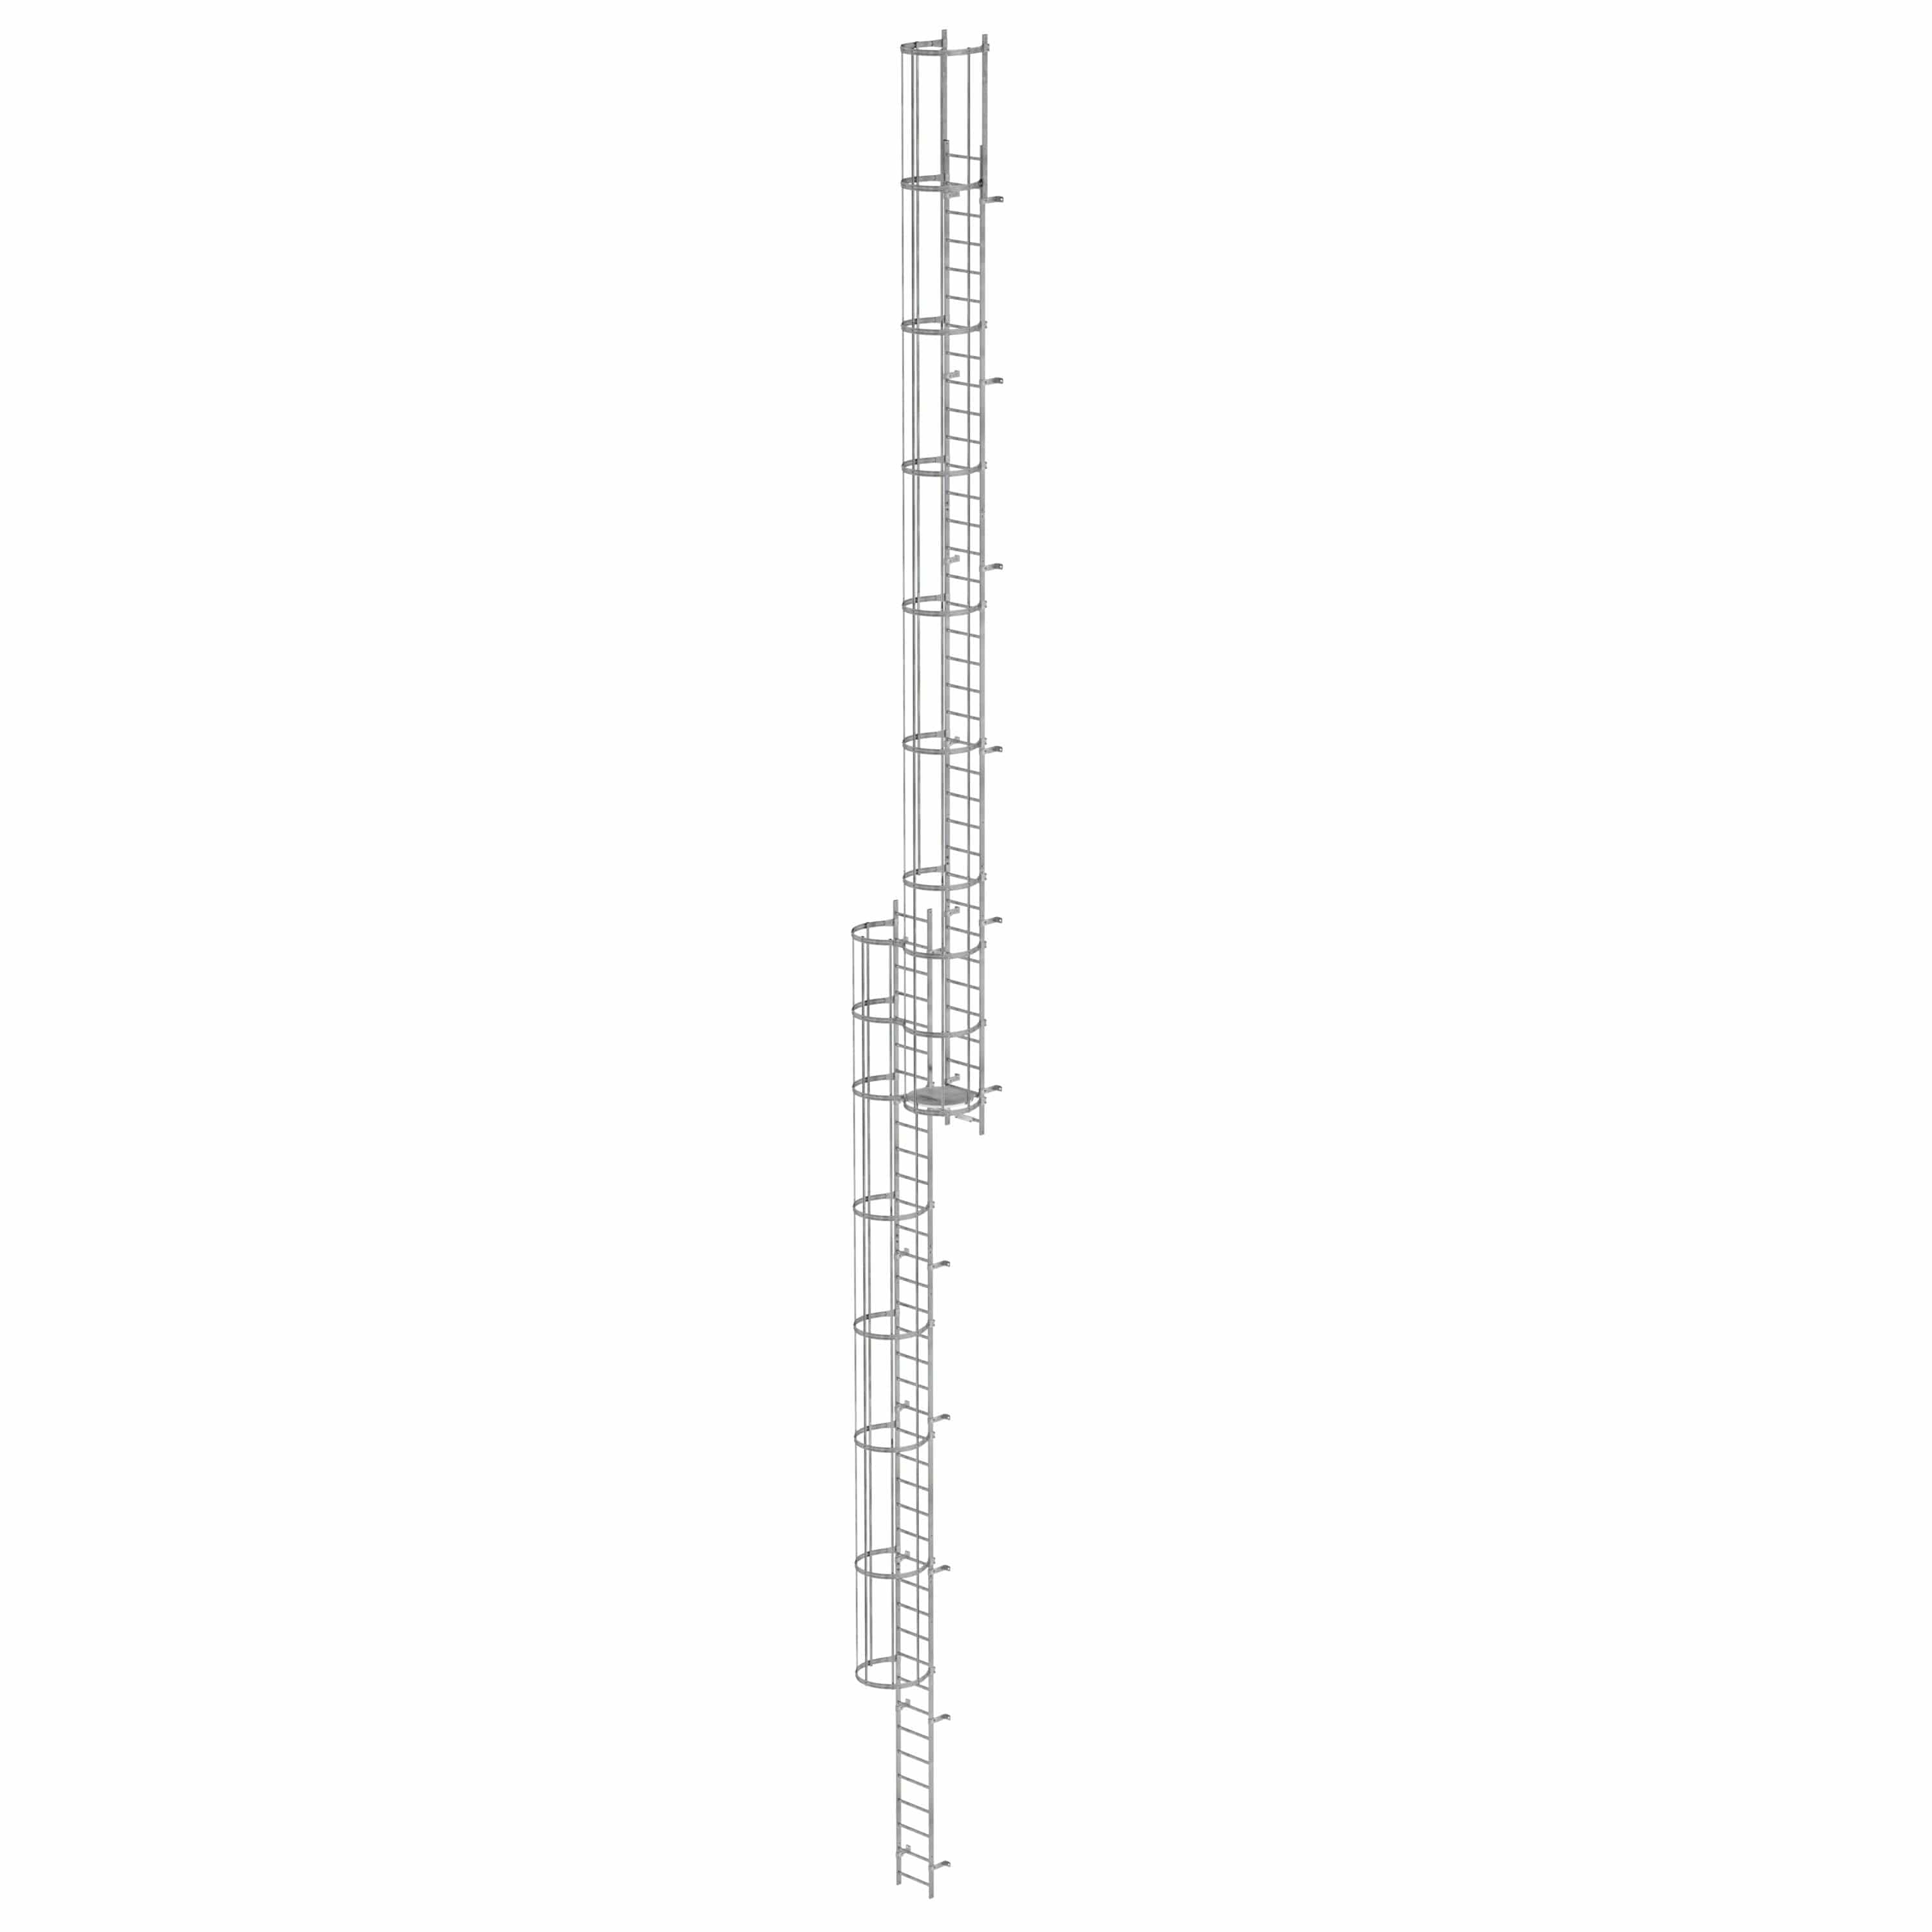 Munk Mehrzügige Steigleiter mit Rückenschutz (Bau) Stahl verzinkt 19,96m